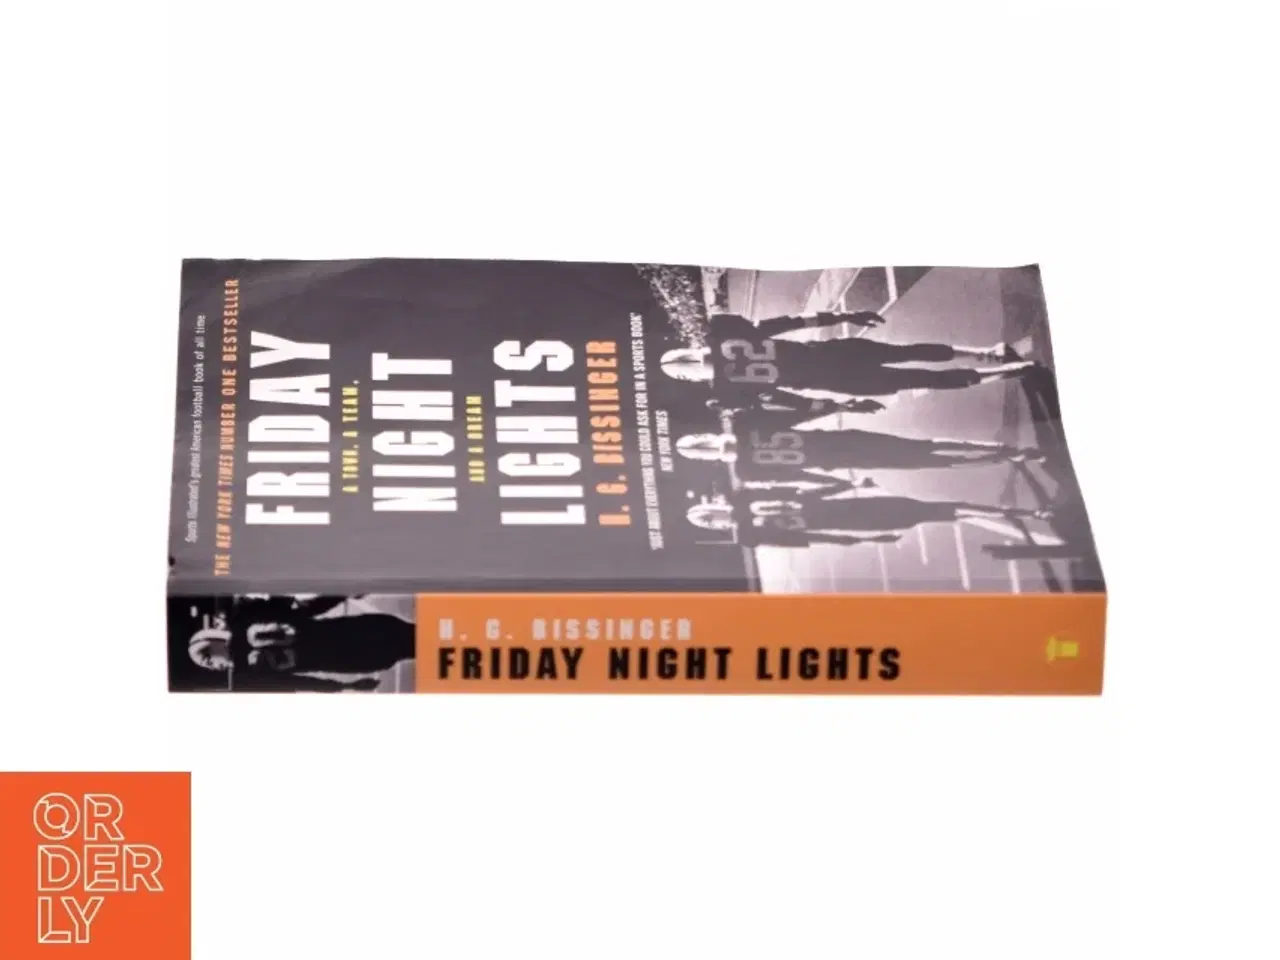 Billede 2 - Friday Night Lights af H. G. Bissinger (Bog)